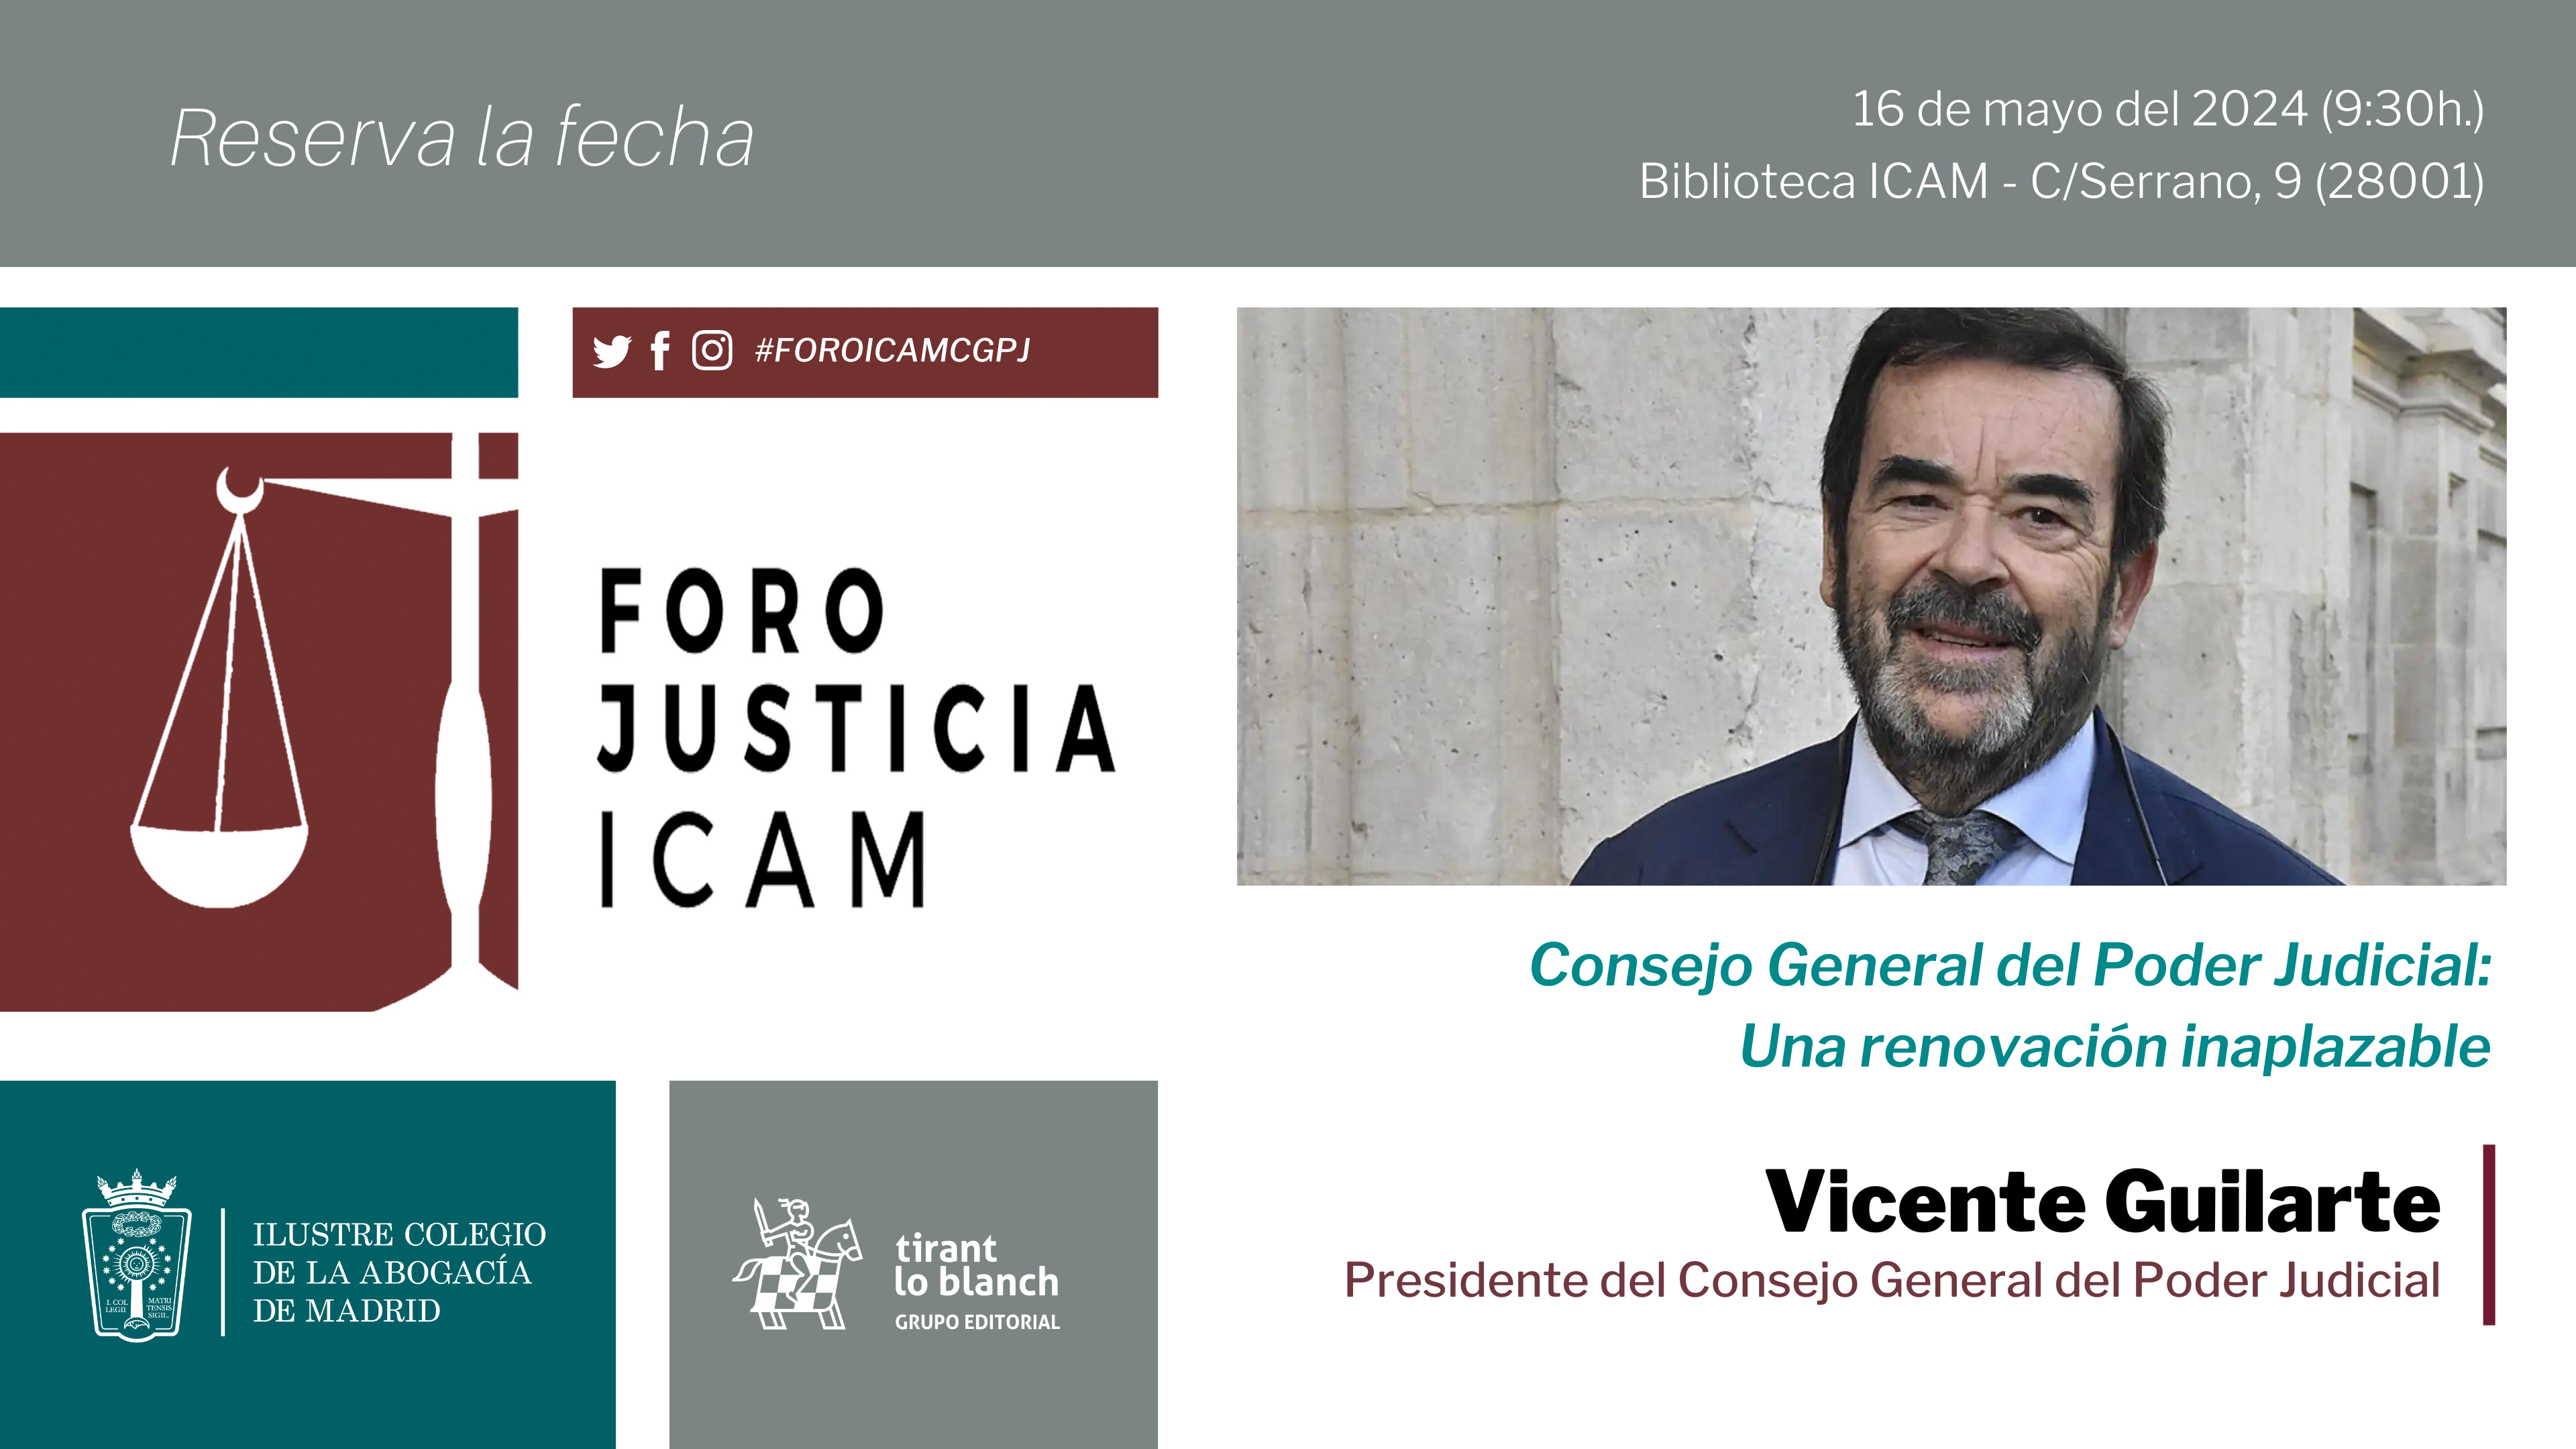 El 16 de mayo, Foro Justicia ICAM con Vicente Guilarte: CGPJ, una renovación inaplazable